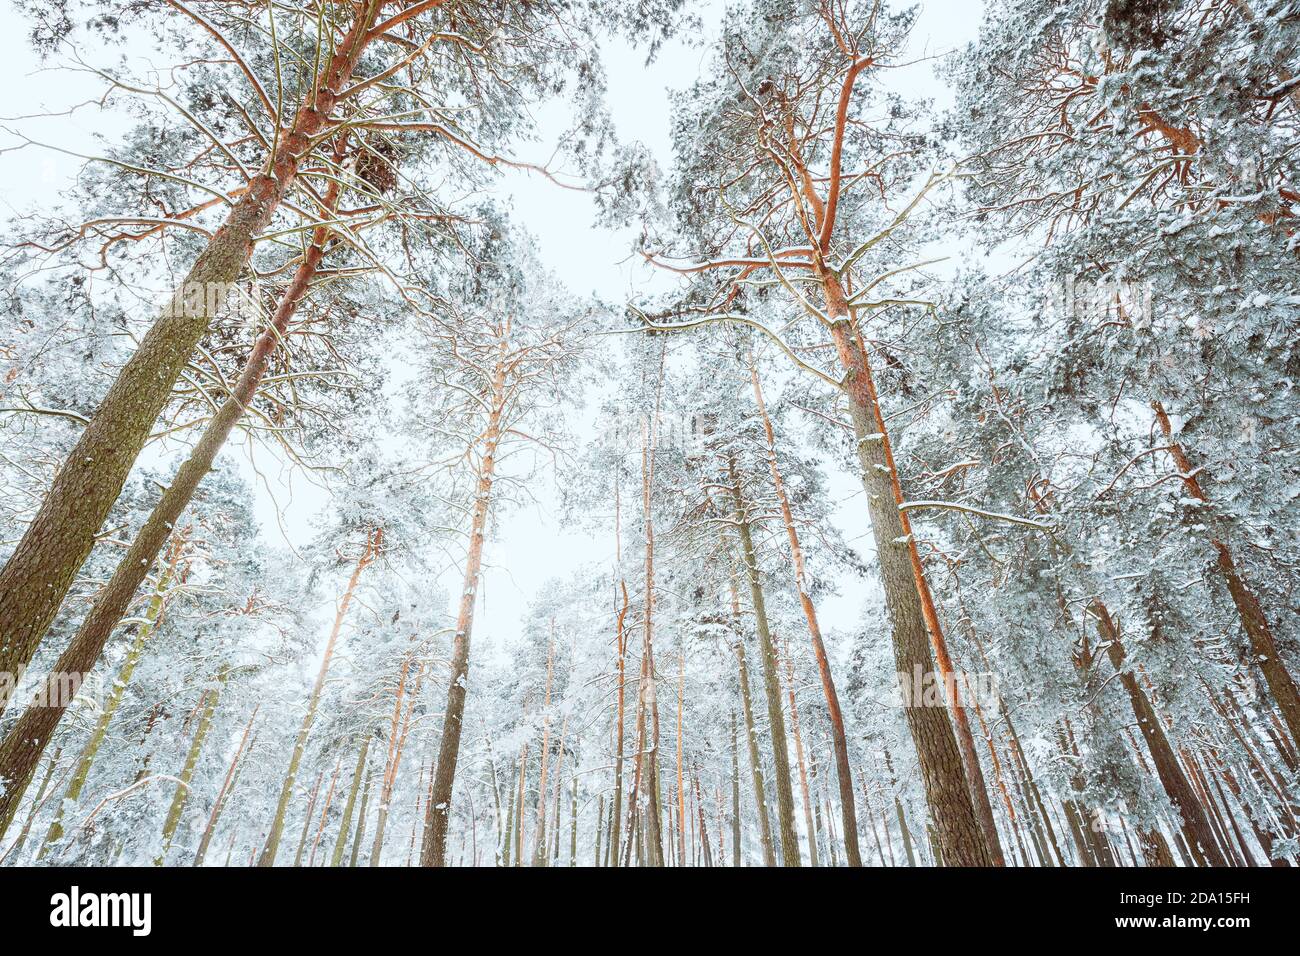 Forêt de pins enneigés. Arbres déglacés Bois de Trunks gelés en hiver Forêt conifères enneigées Banque D'Images